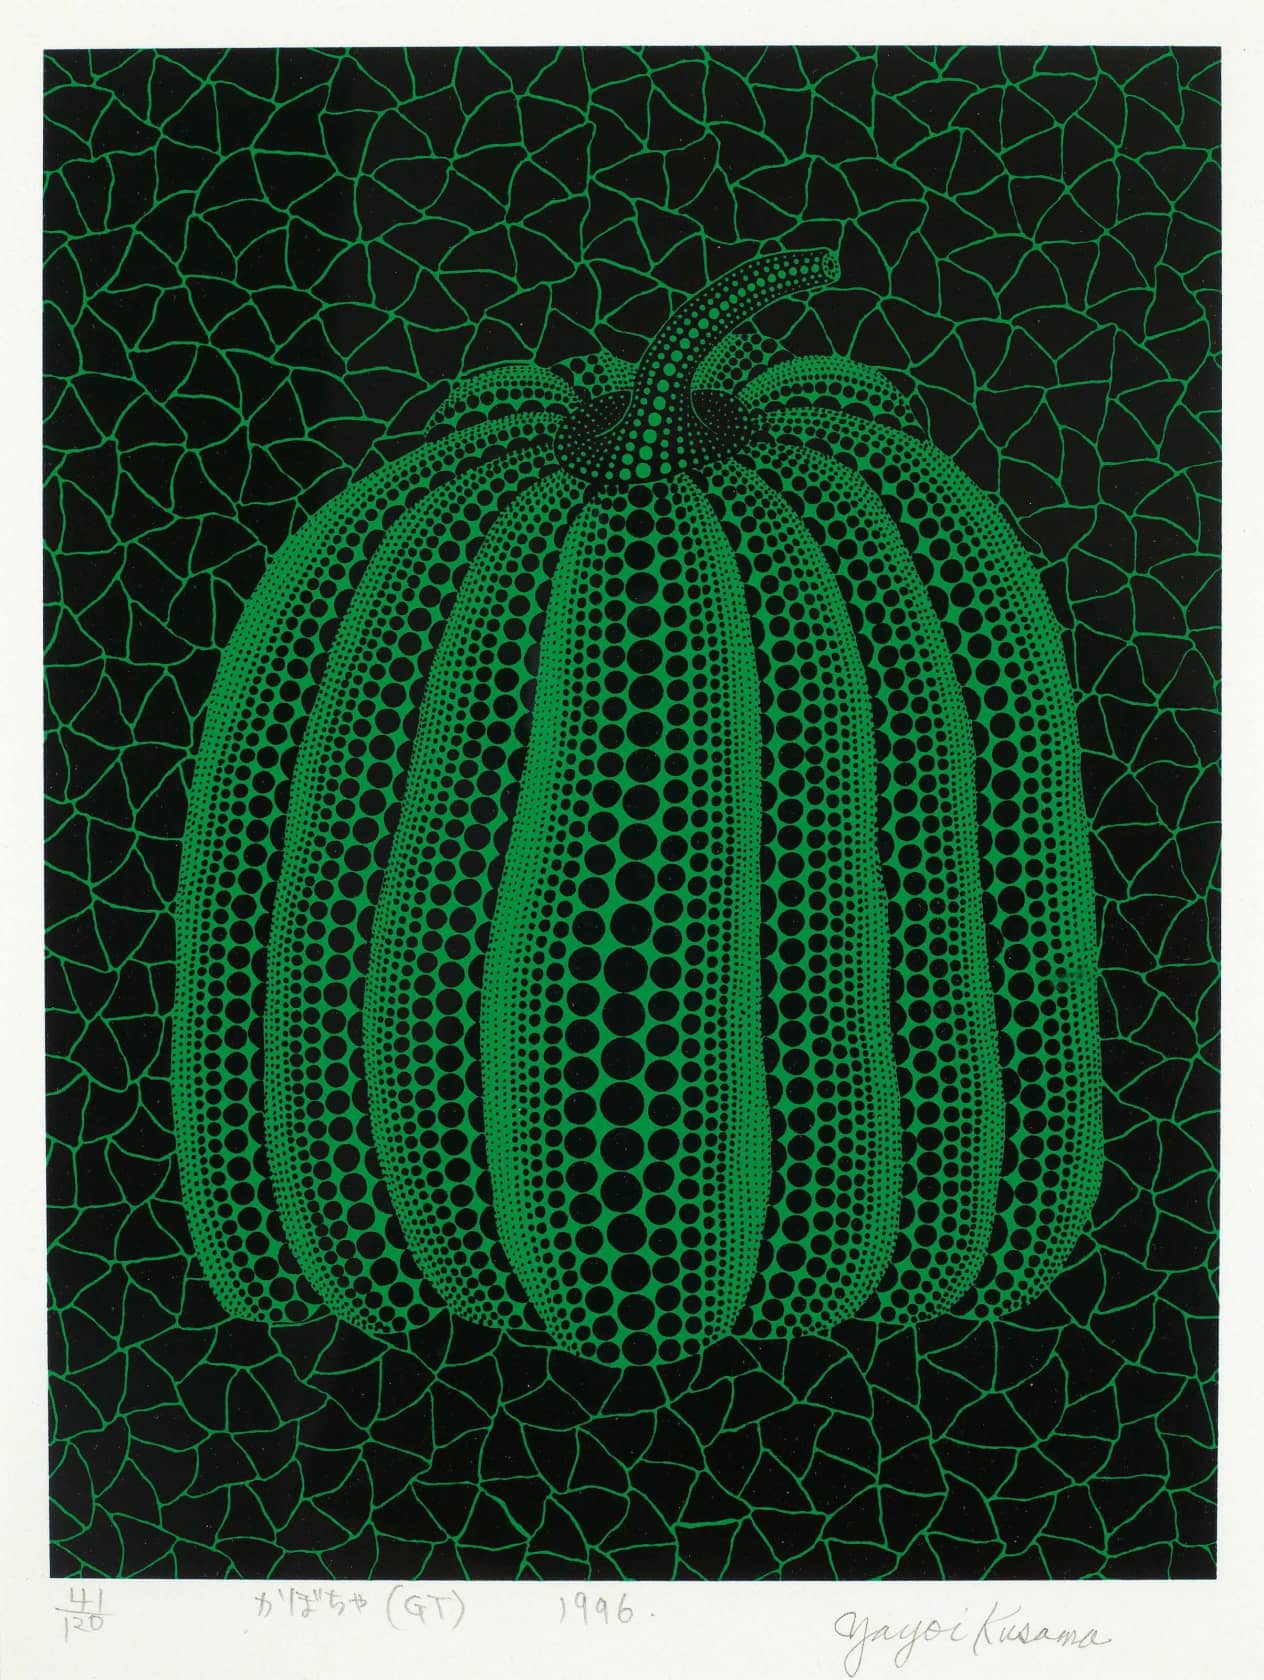 Yayoi Kusama, Pumpkin (GT), 1996